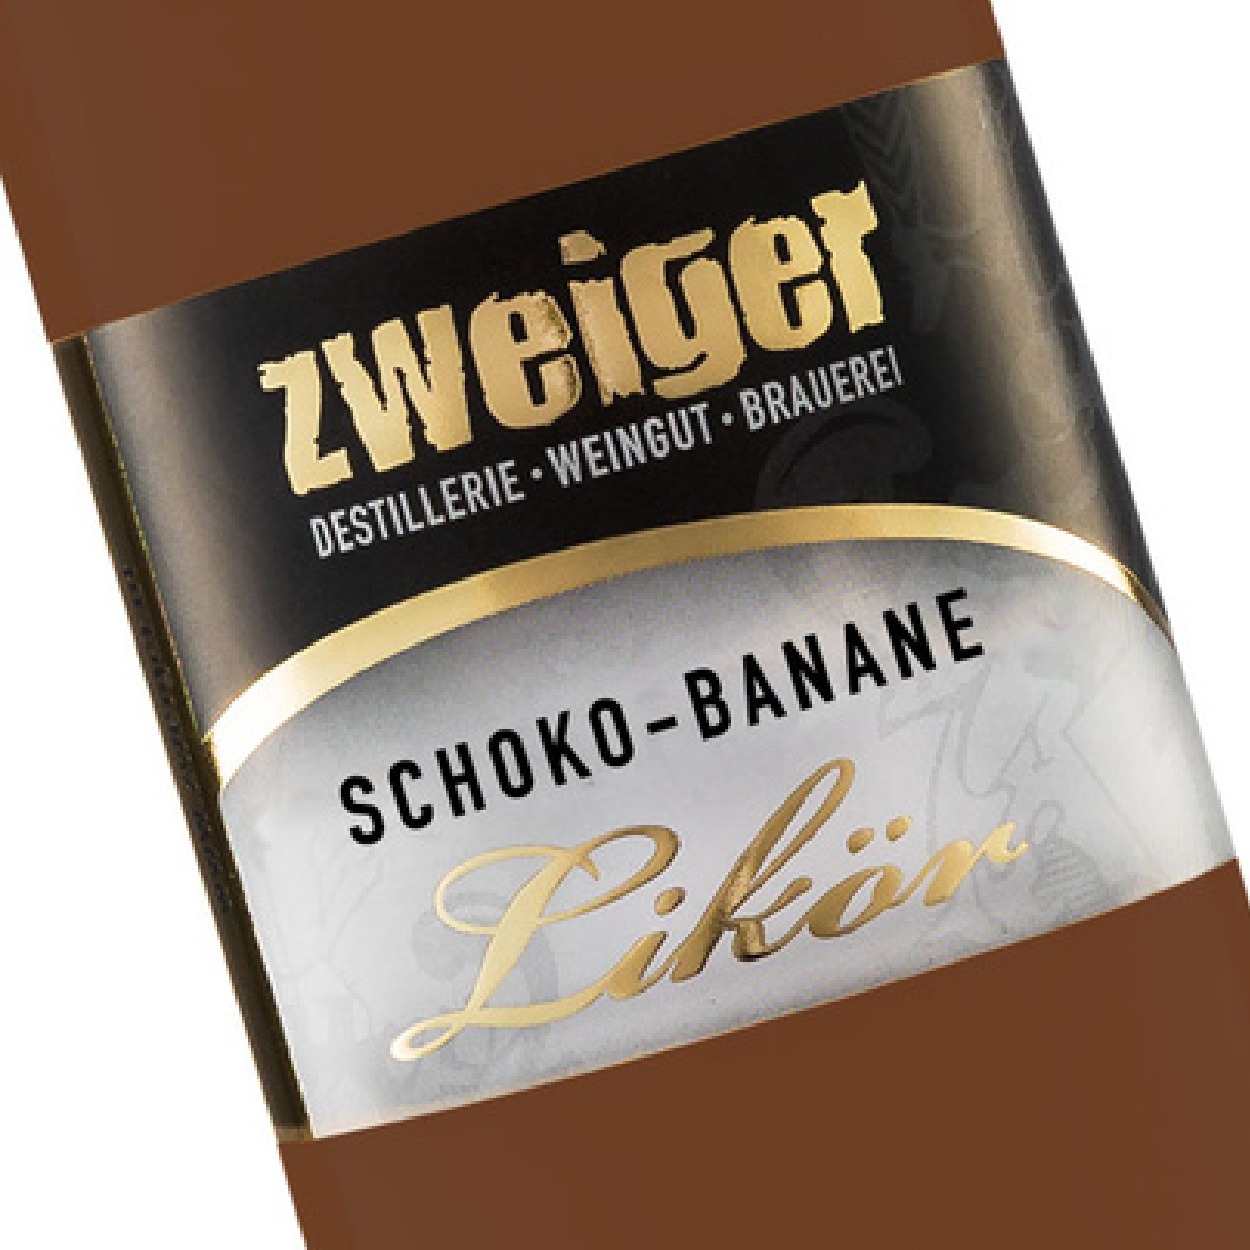 Schoko-Banane Cremelikör Zweiger Destillerie